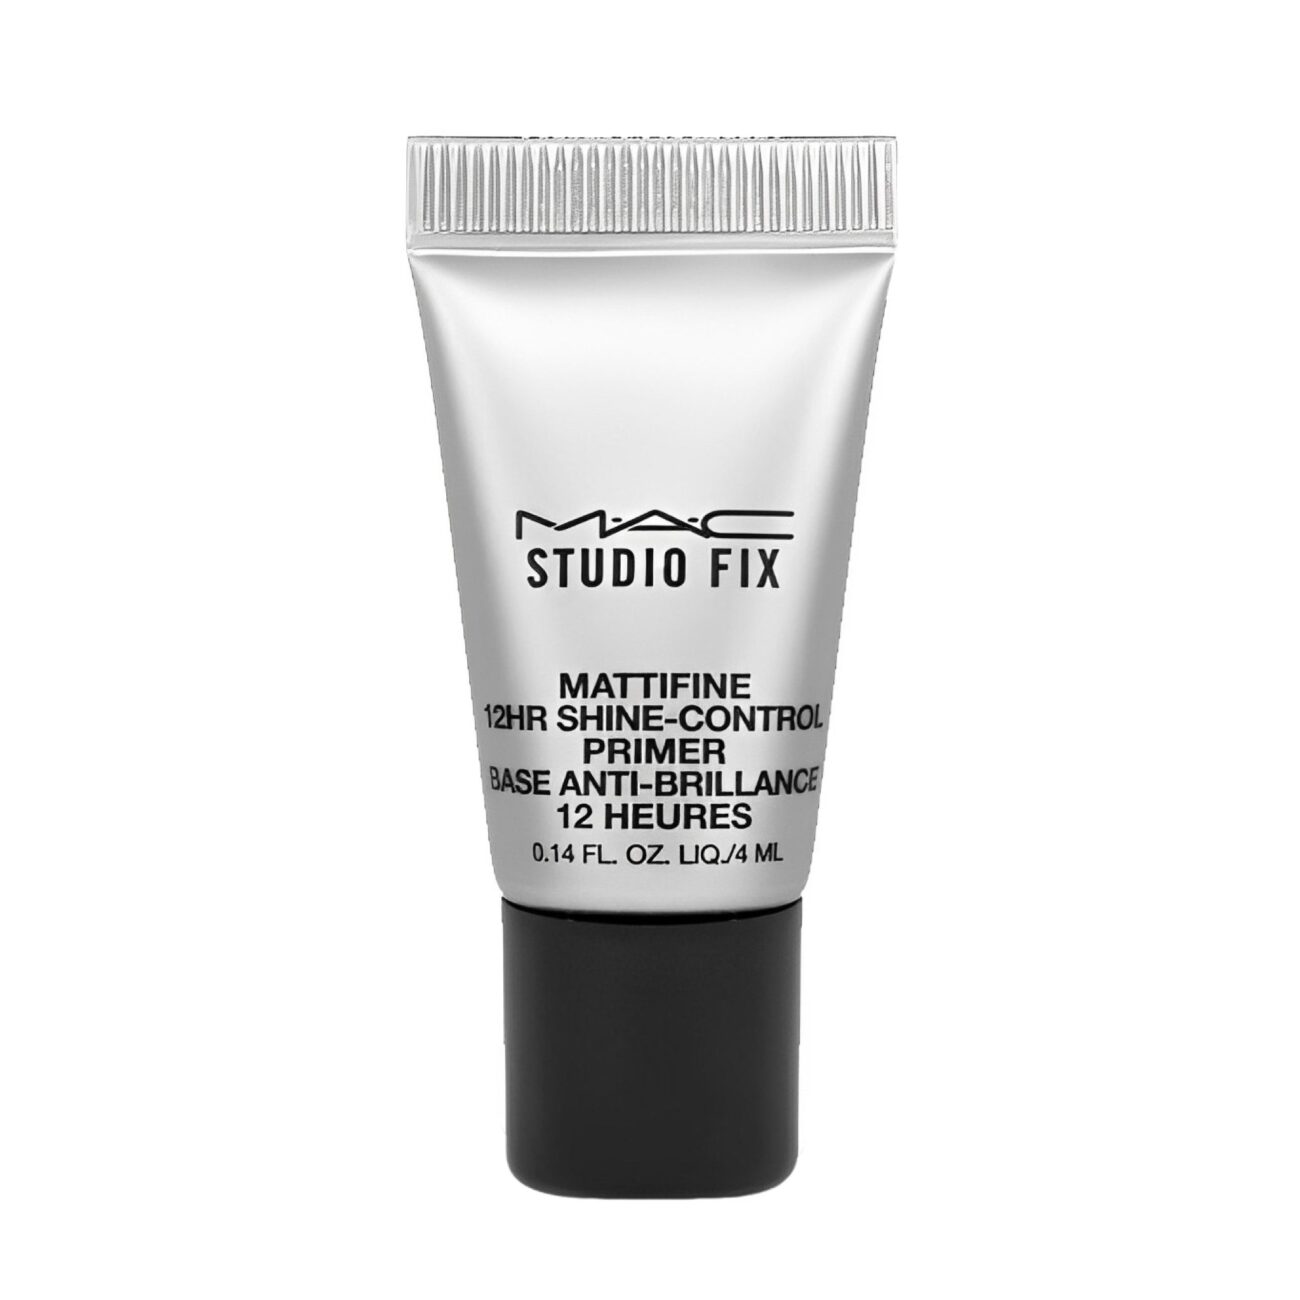 Studio Fix Mattifine 12HR Shine-Control Primer deluxe sample-MAC Cosmetics